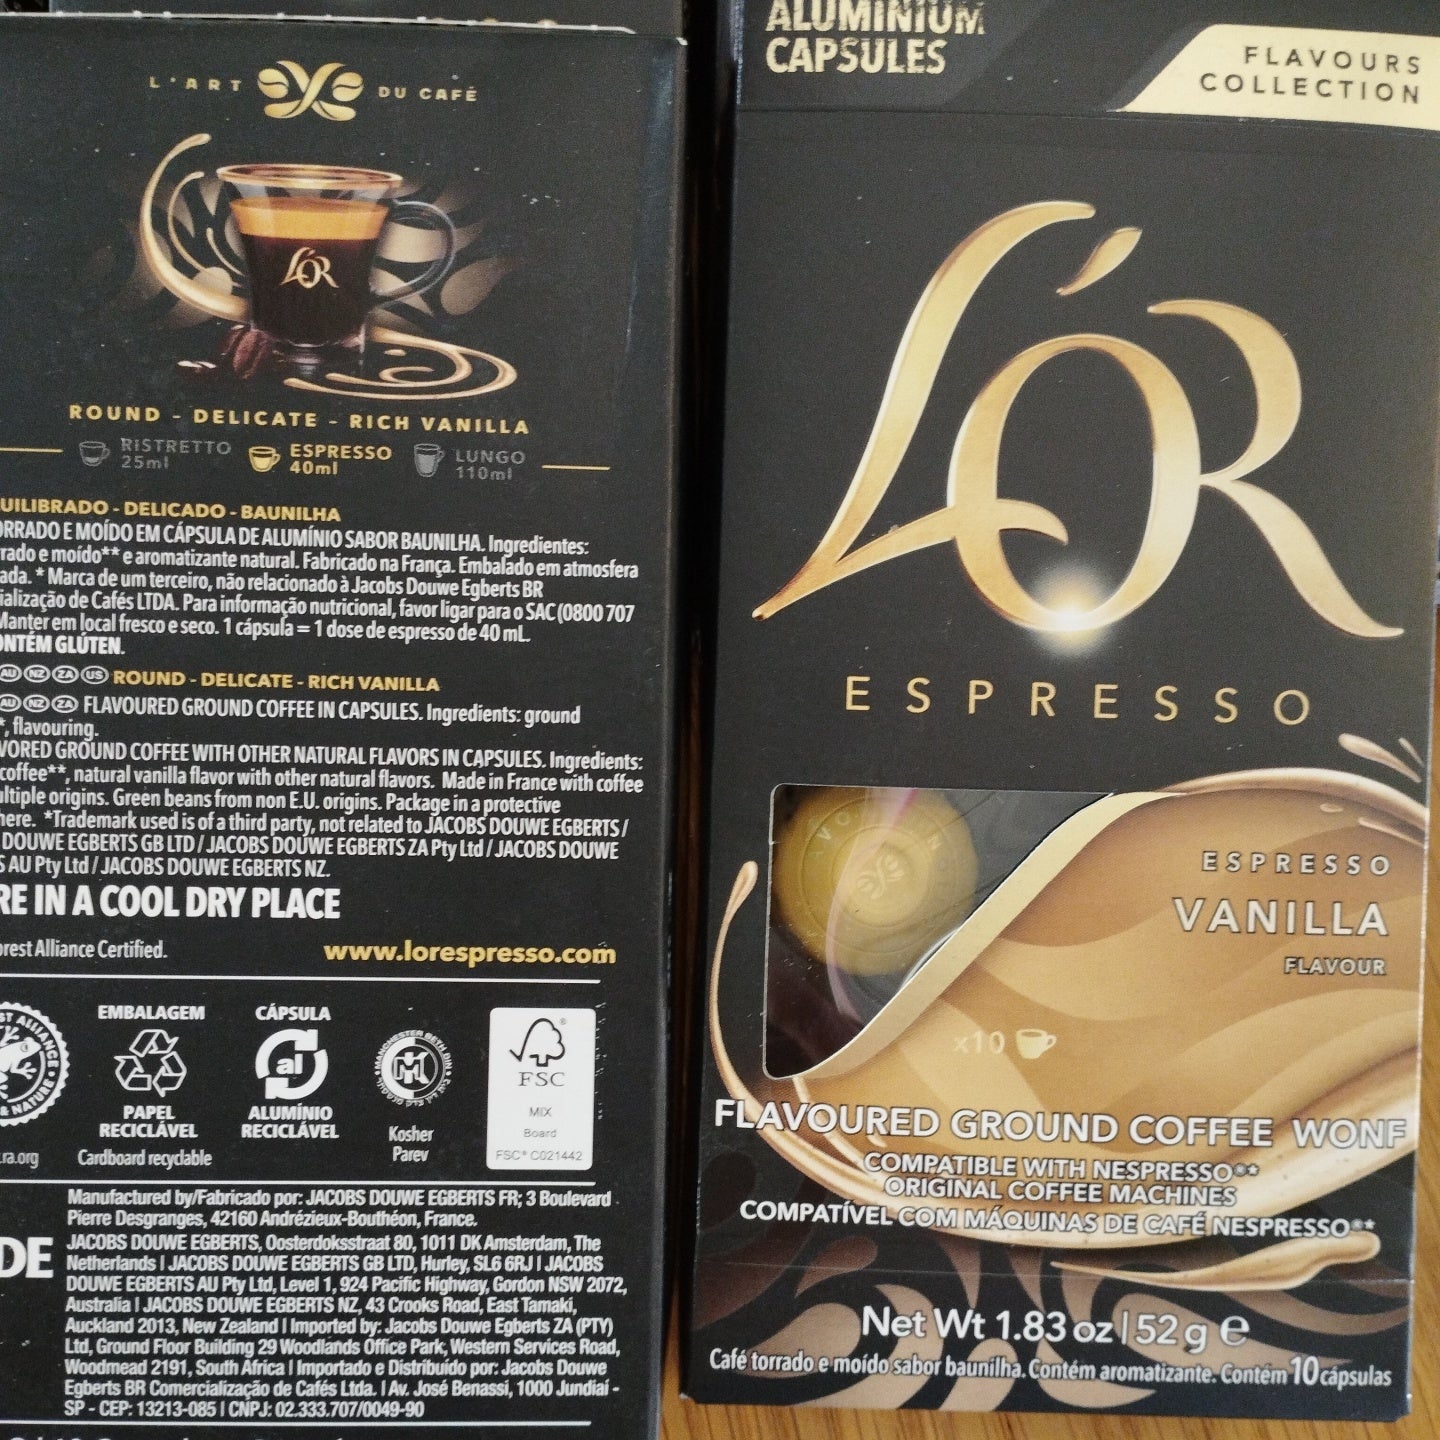 LOR espresso capsules-vanilla- 10 capsules per box X 10